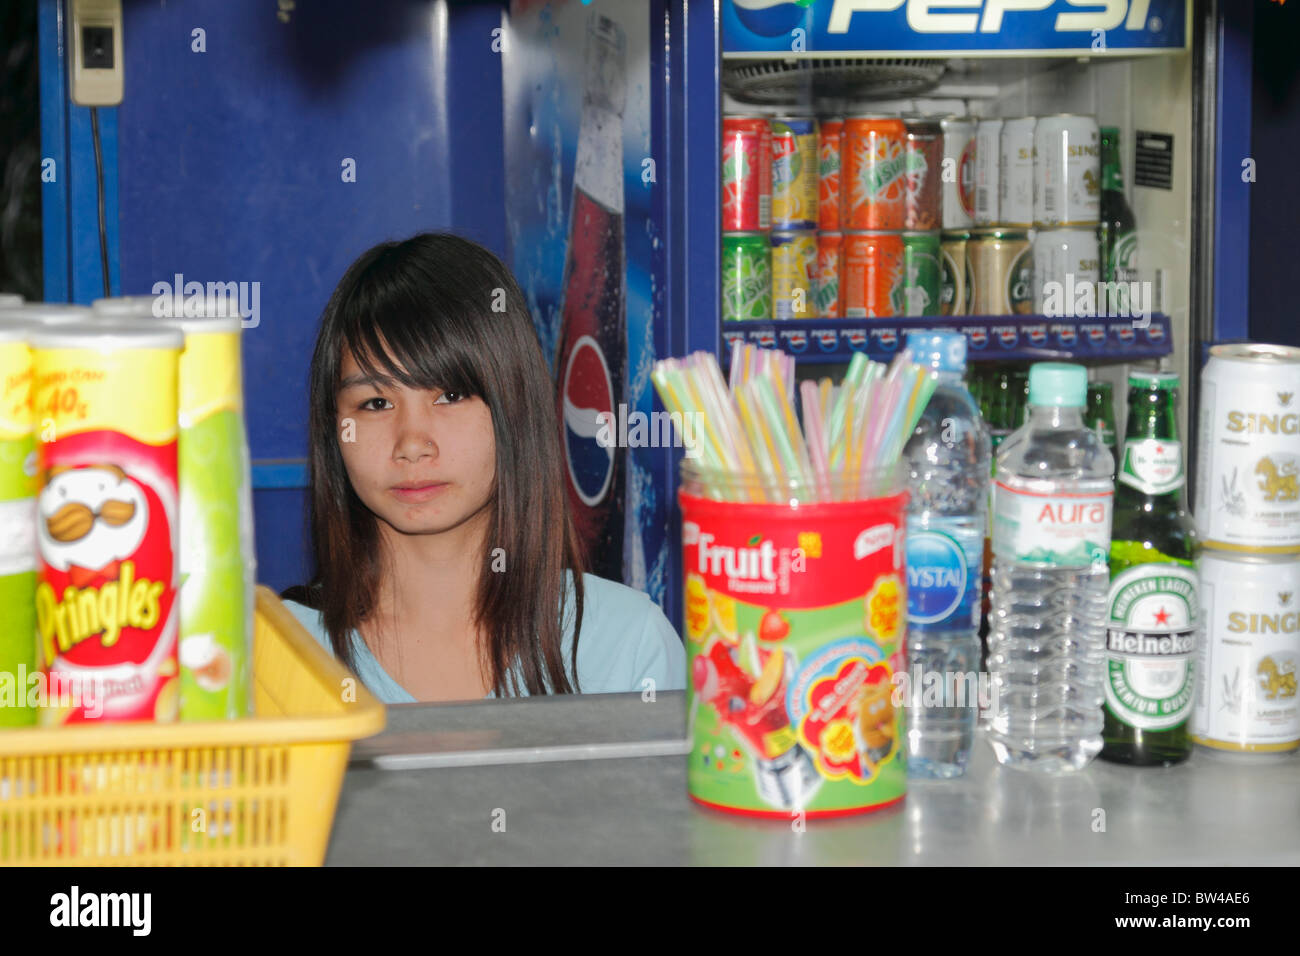 Thai girl assis derrière le bureau en gardant la petite épicerie (tirer). Ferme aux crocodiles de Pattaya, Thaïlande Octobre 2010 Banque D'Images